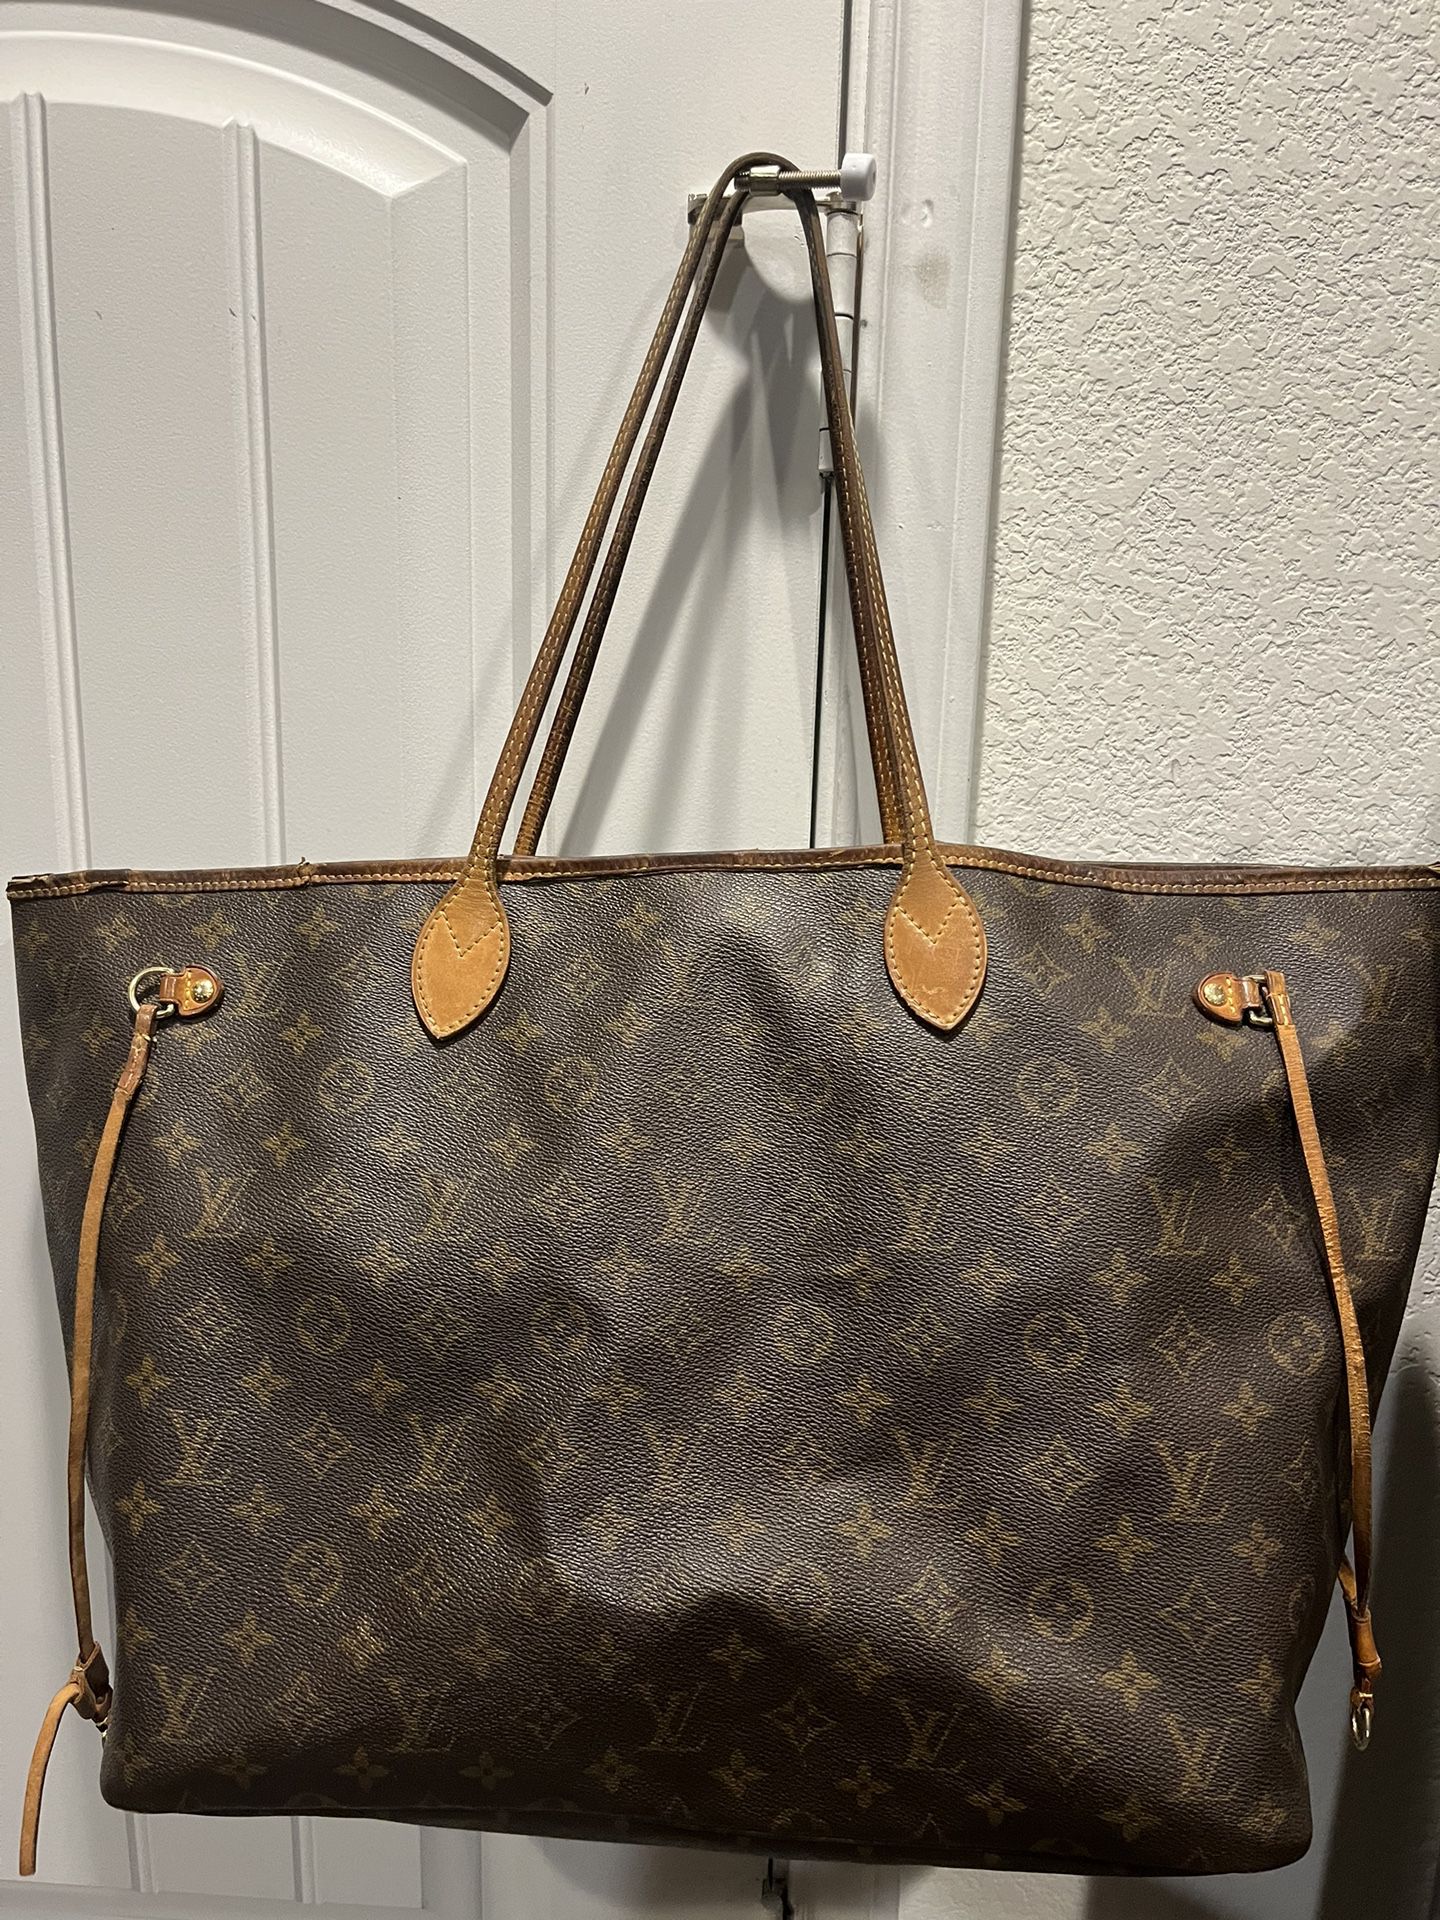 LV bag for Sale in Leander, TX - OfferUp